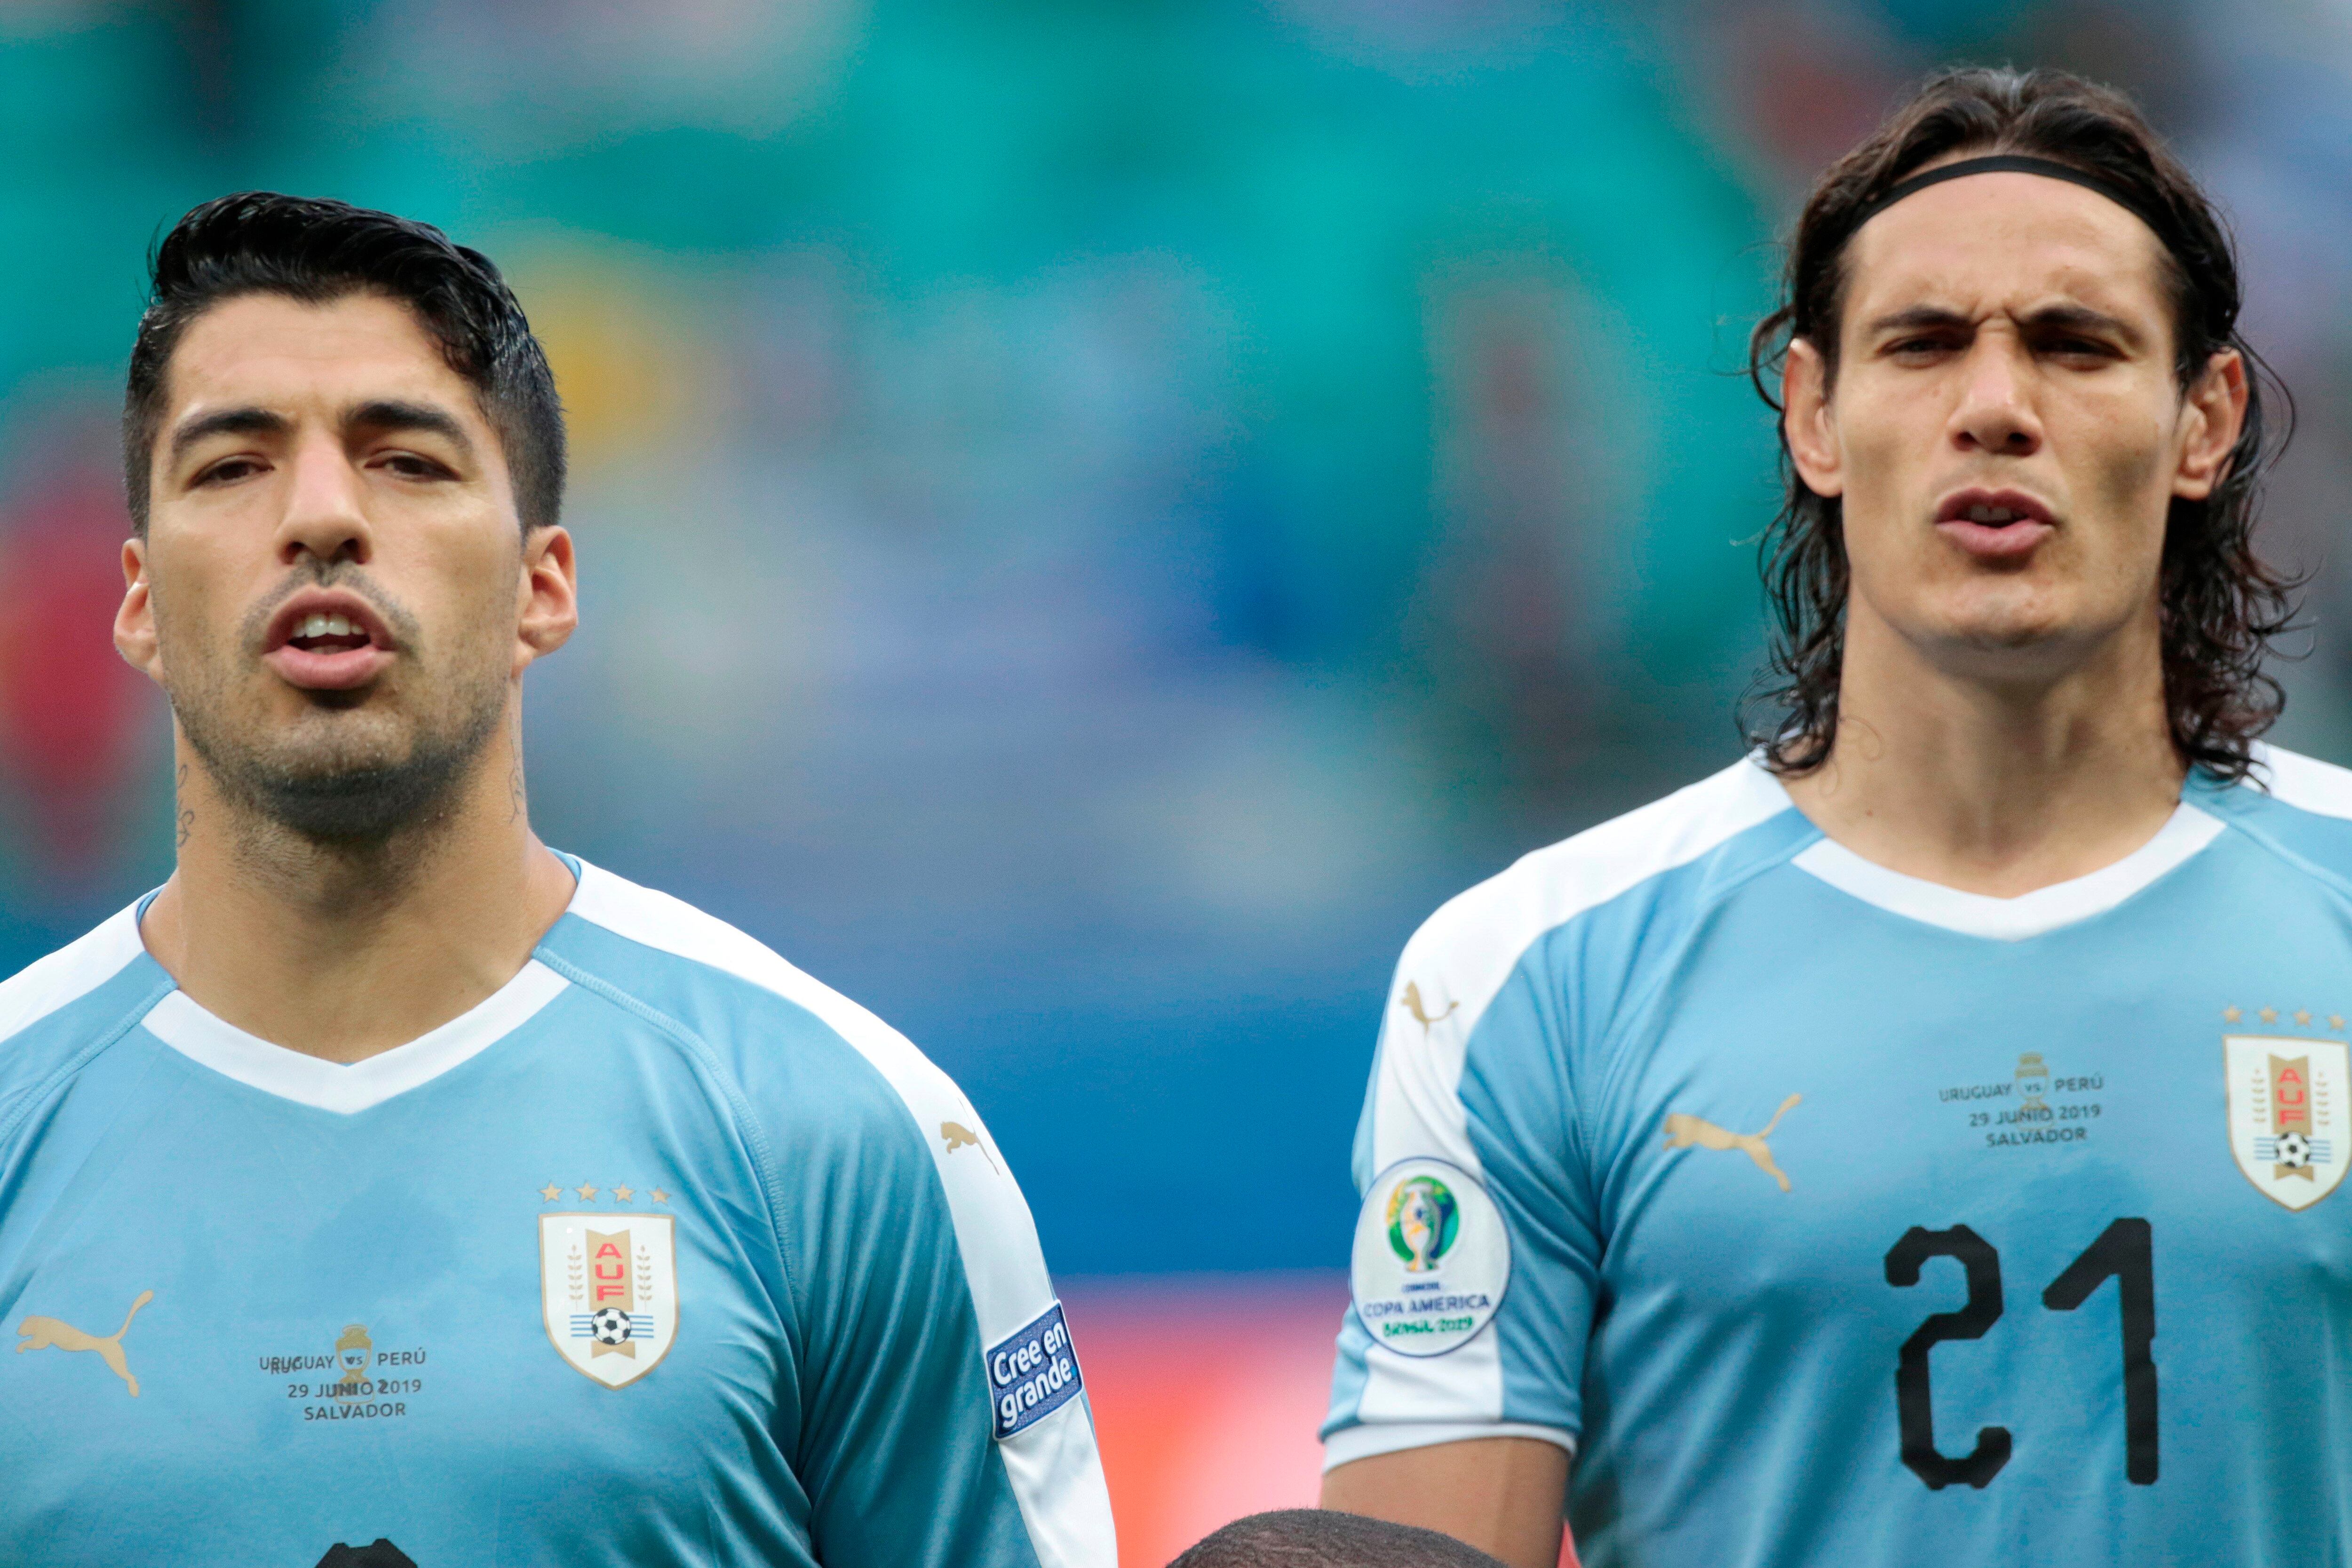 Eliminatorias Sudamericanas 2026: Cuándo y a qué hora es Uruguay vs Chile,  dónde ver el partido y alineaciones probables